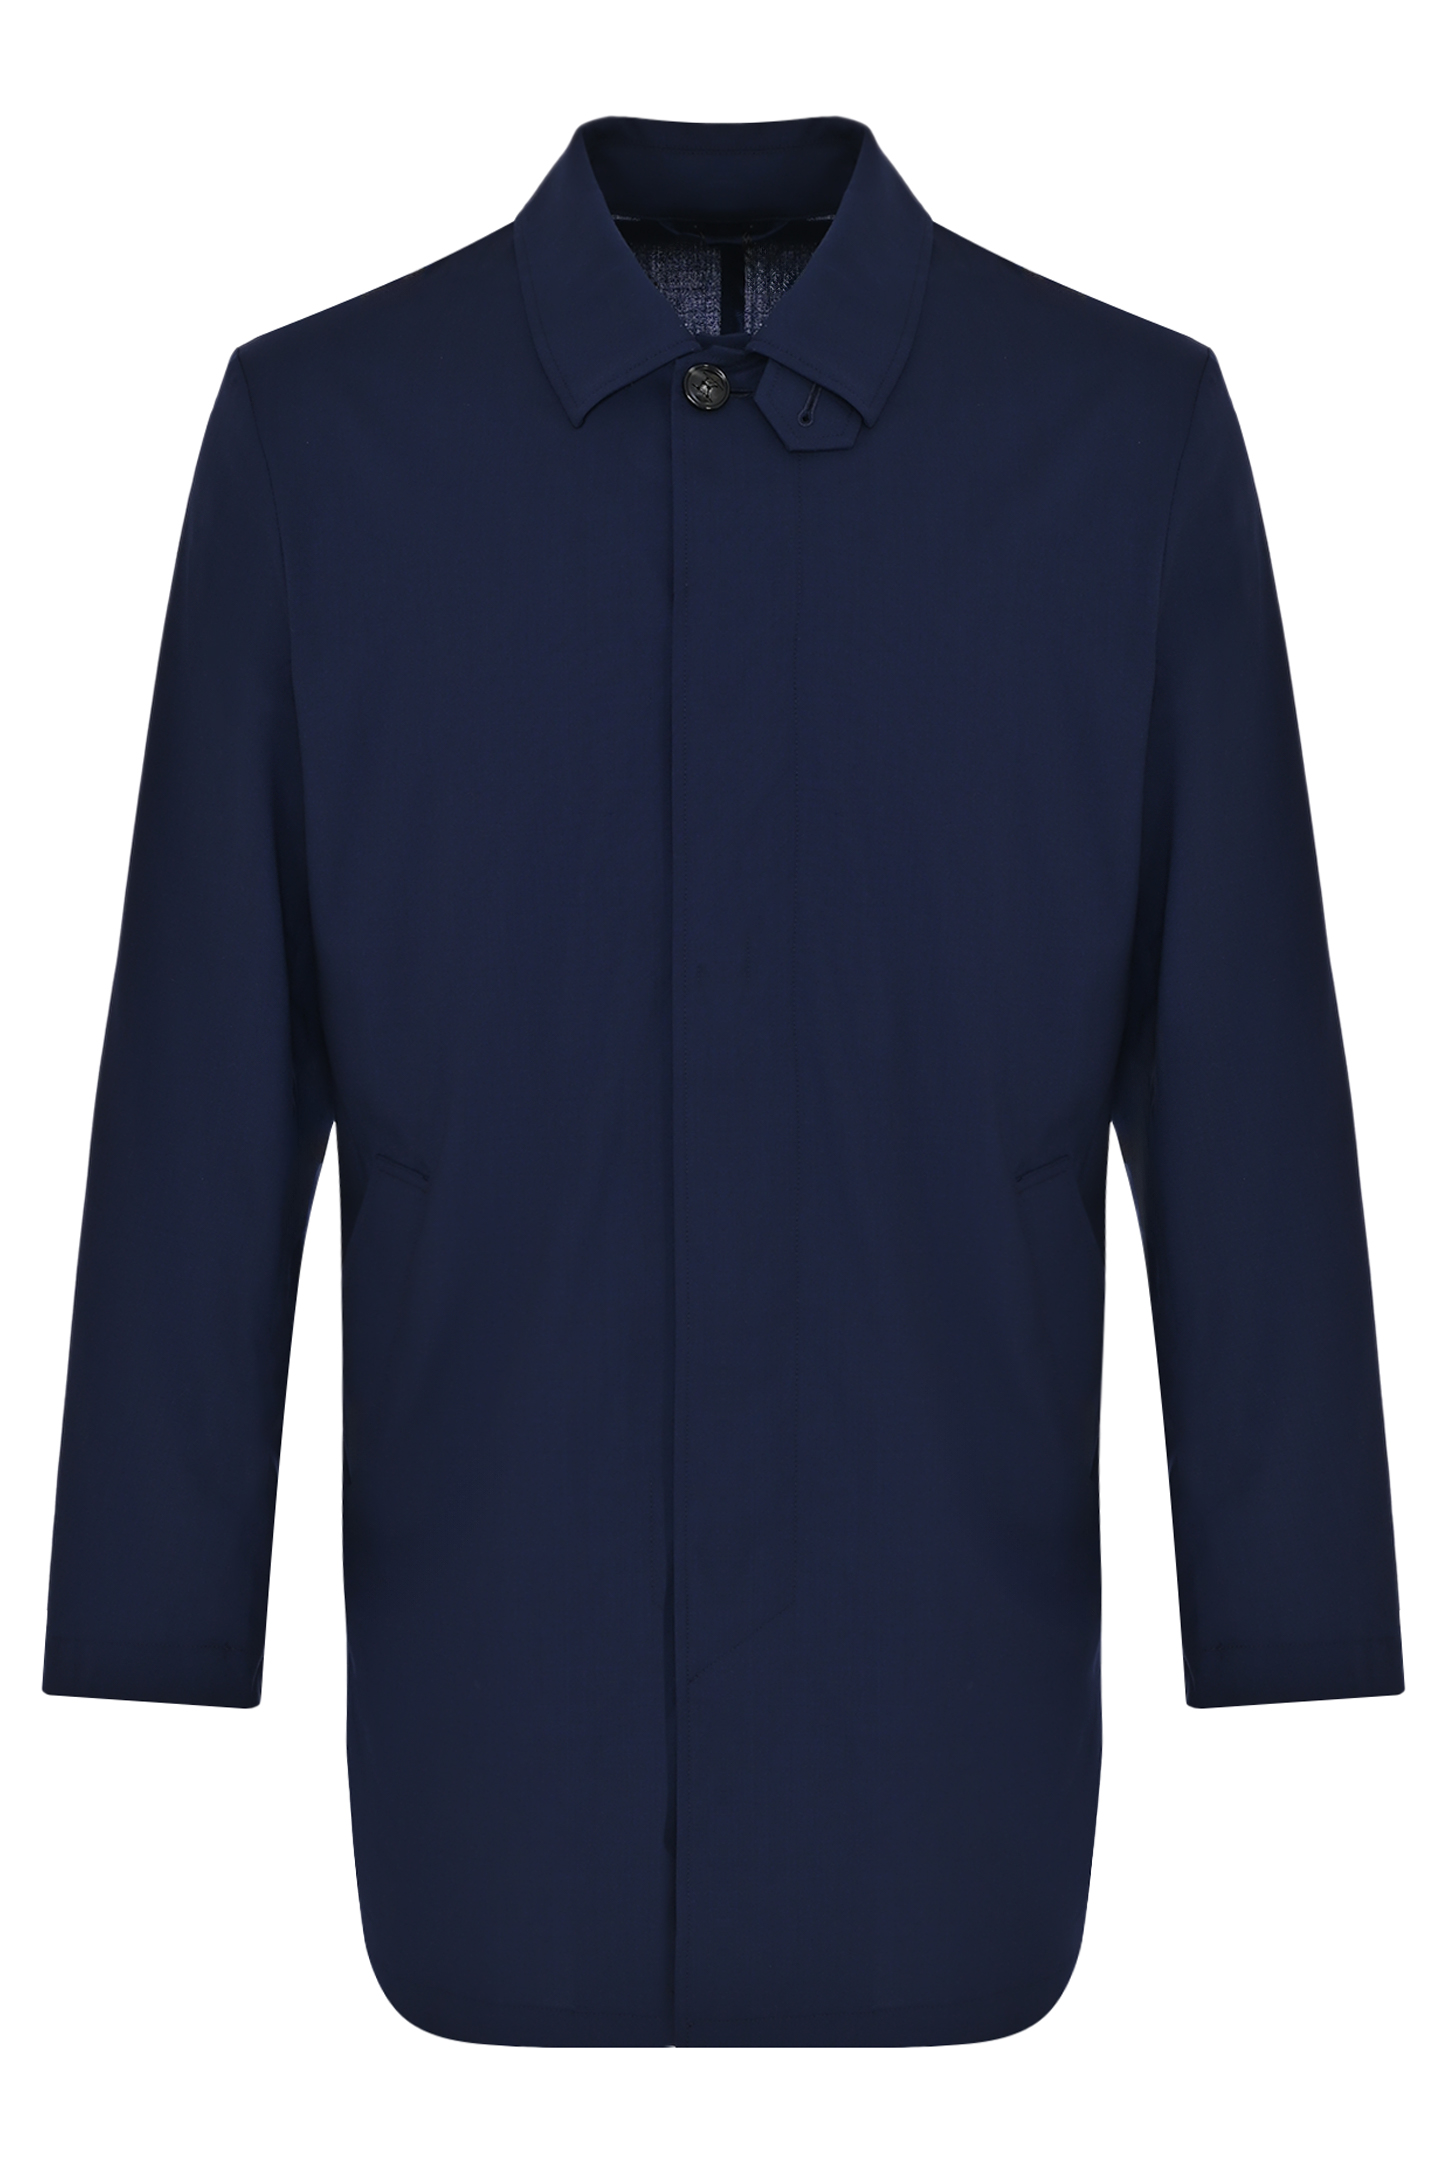 Пальто классическое с карманами KITON UW1725K0638C0, цвет: Темно-синий, Мужской